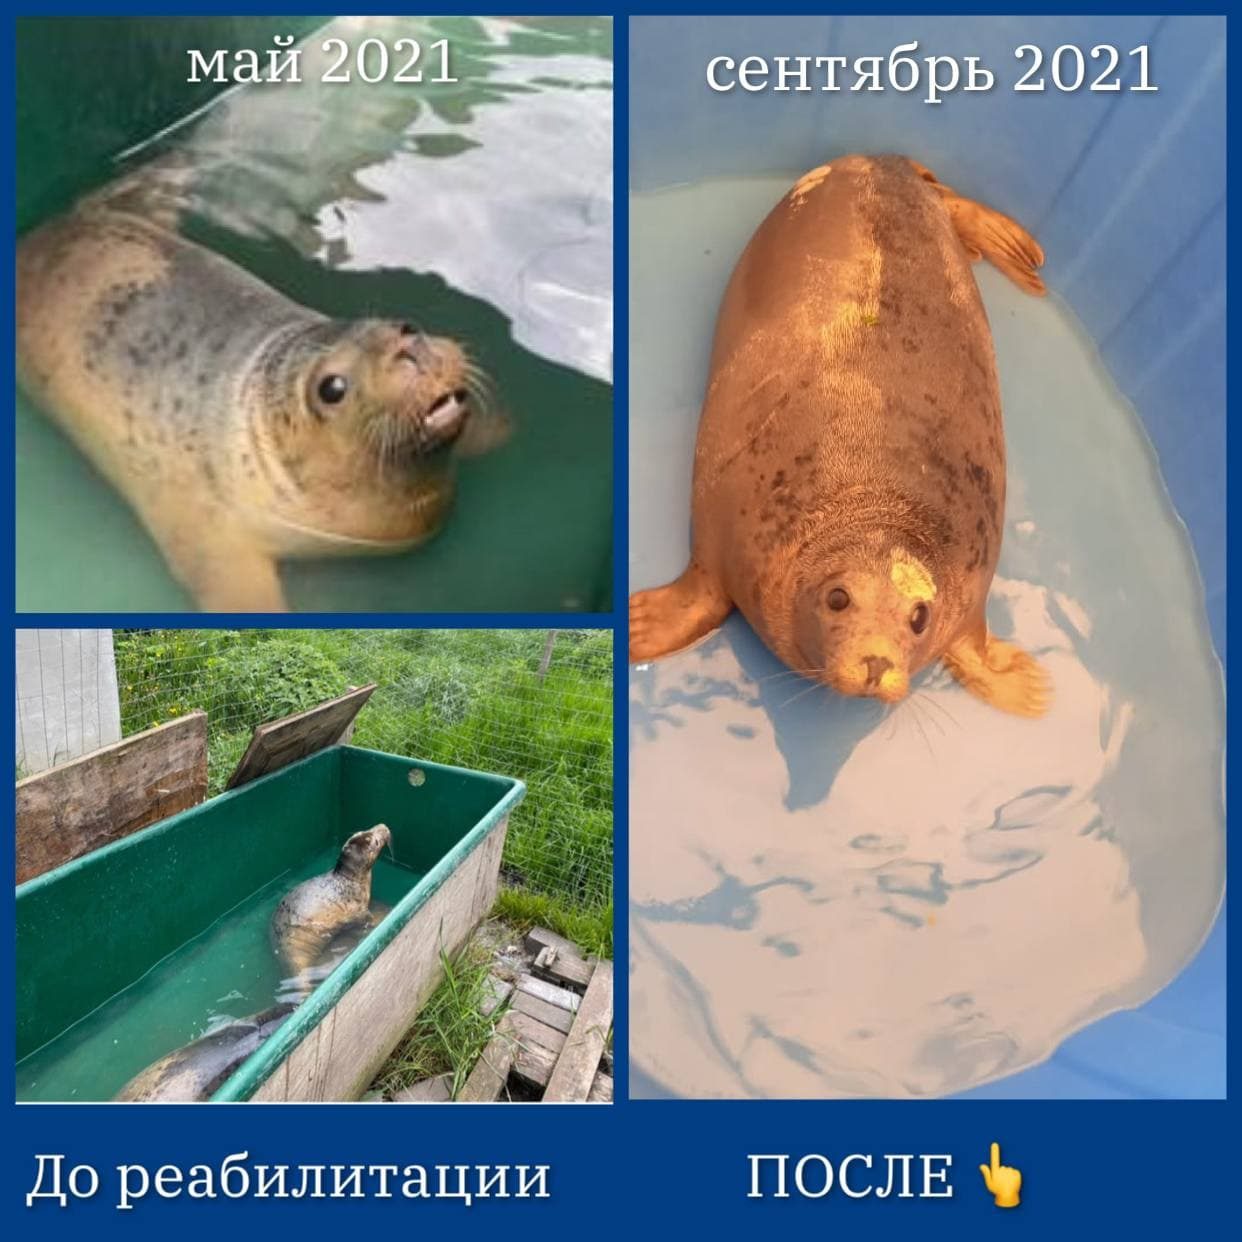 Петербургским активистам пришлось спасать тюленят после нерадивых калининградских коллег